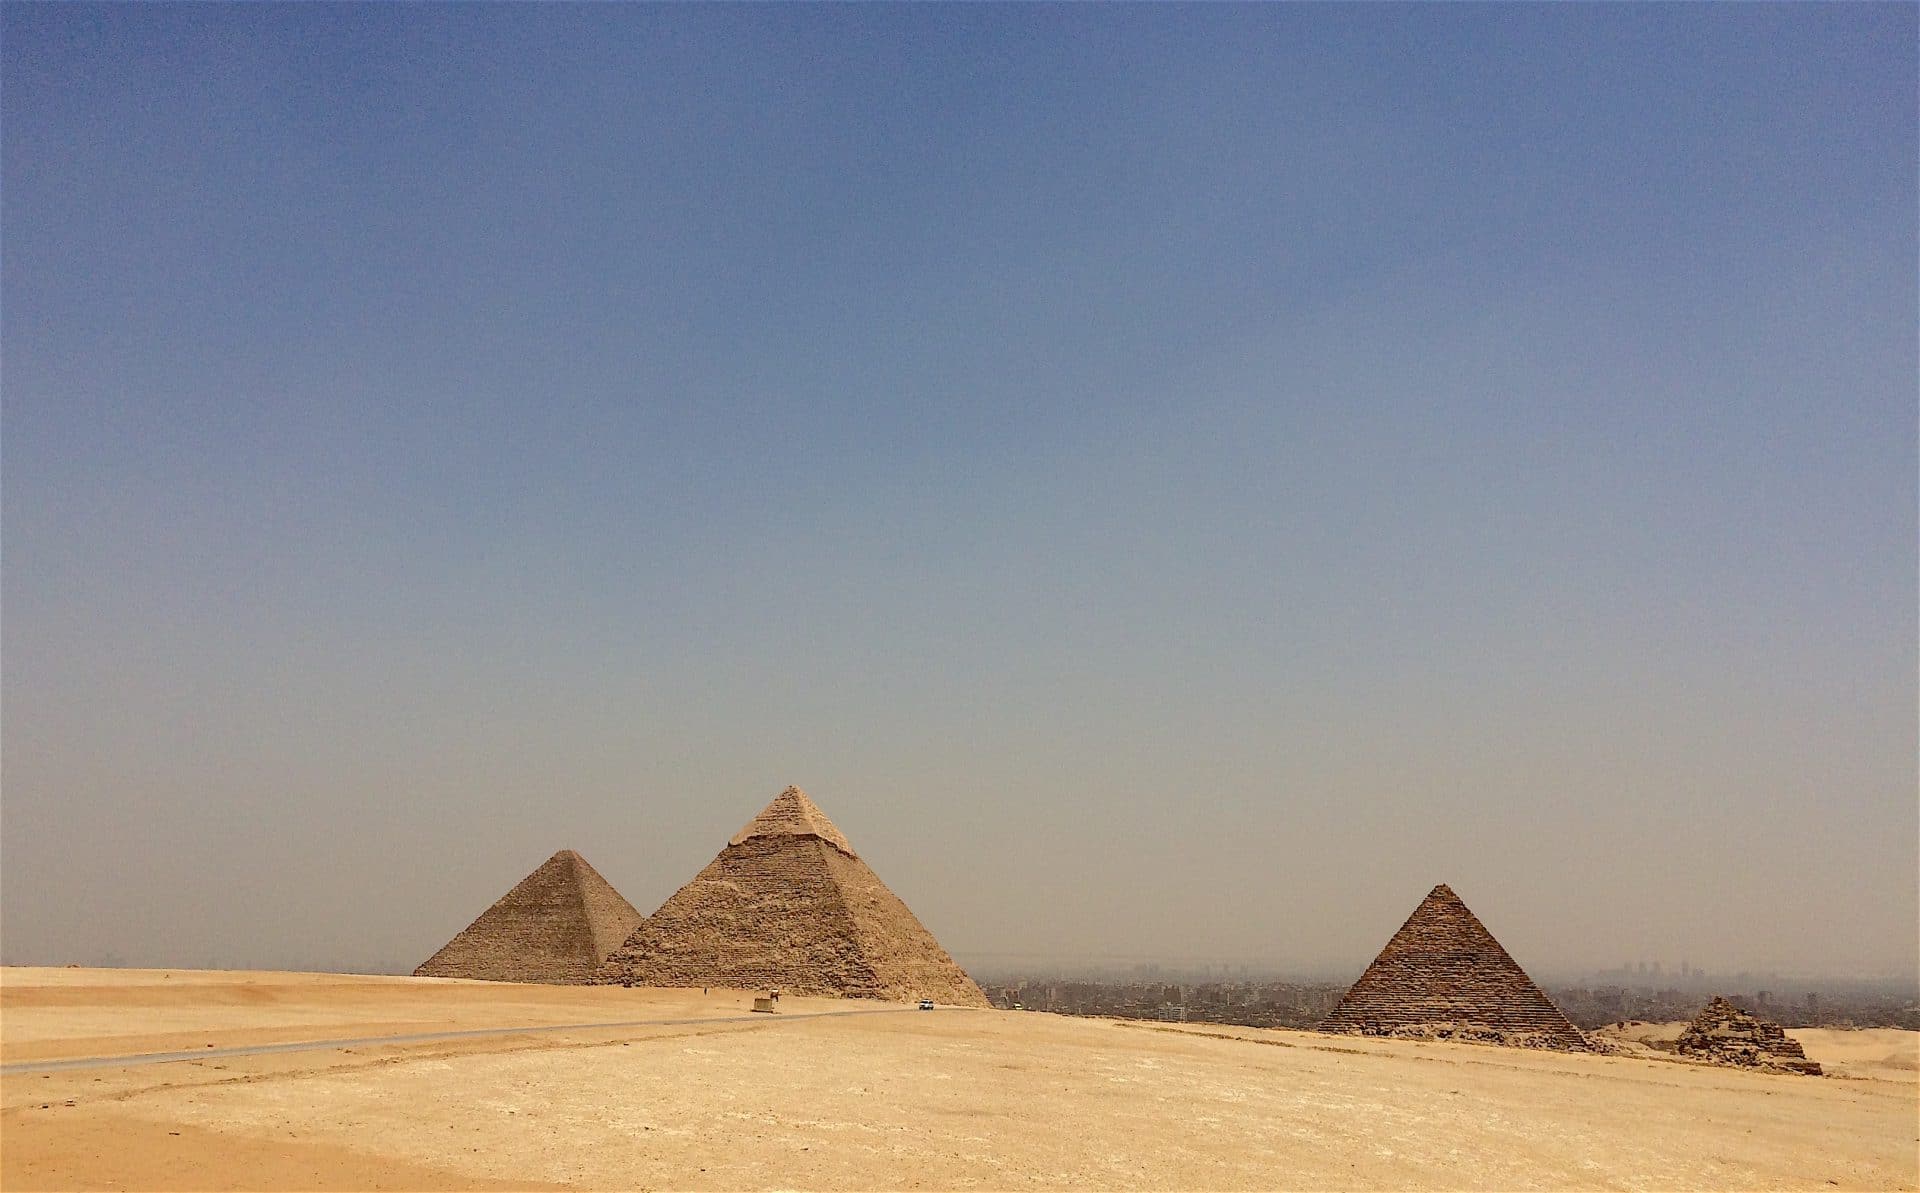 القول بأن أهرامات إفريقيا بنتها كائنات فضائية يدل على العنصرية Pyramidy of Giza, Egypt – © Photo: Hakim Khatib MPC Journal